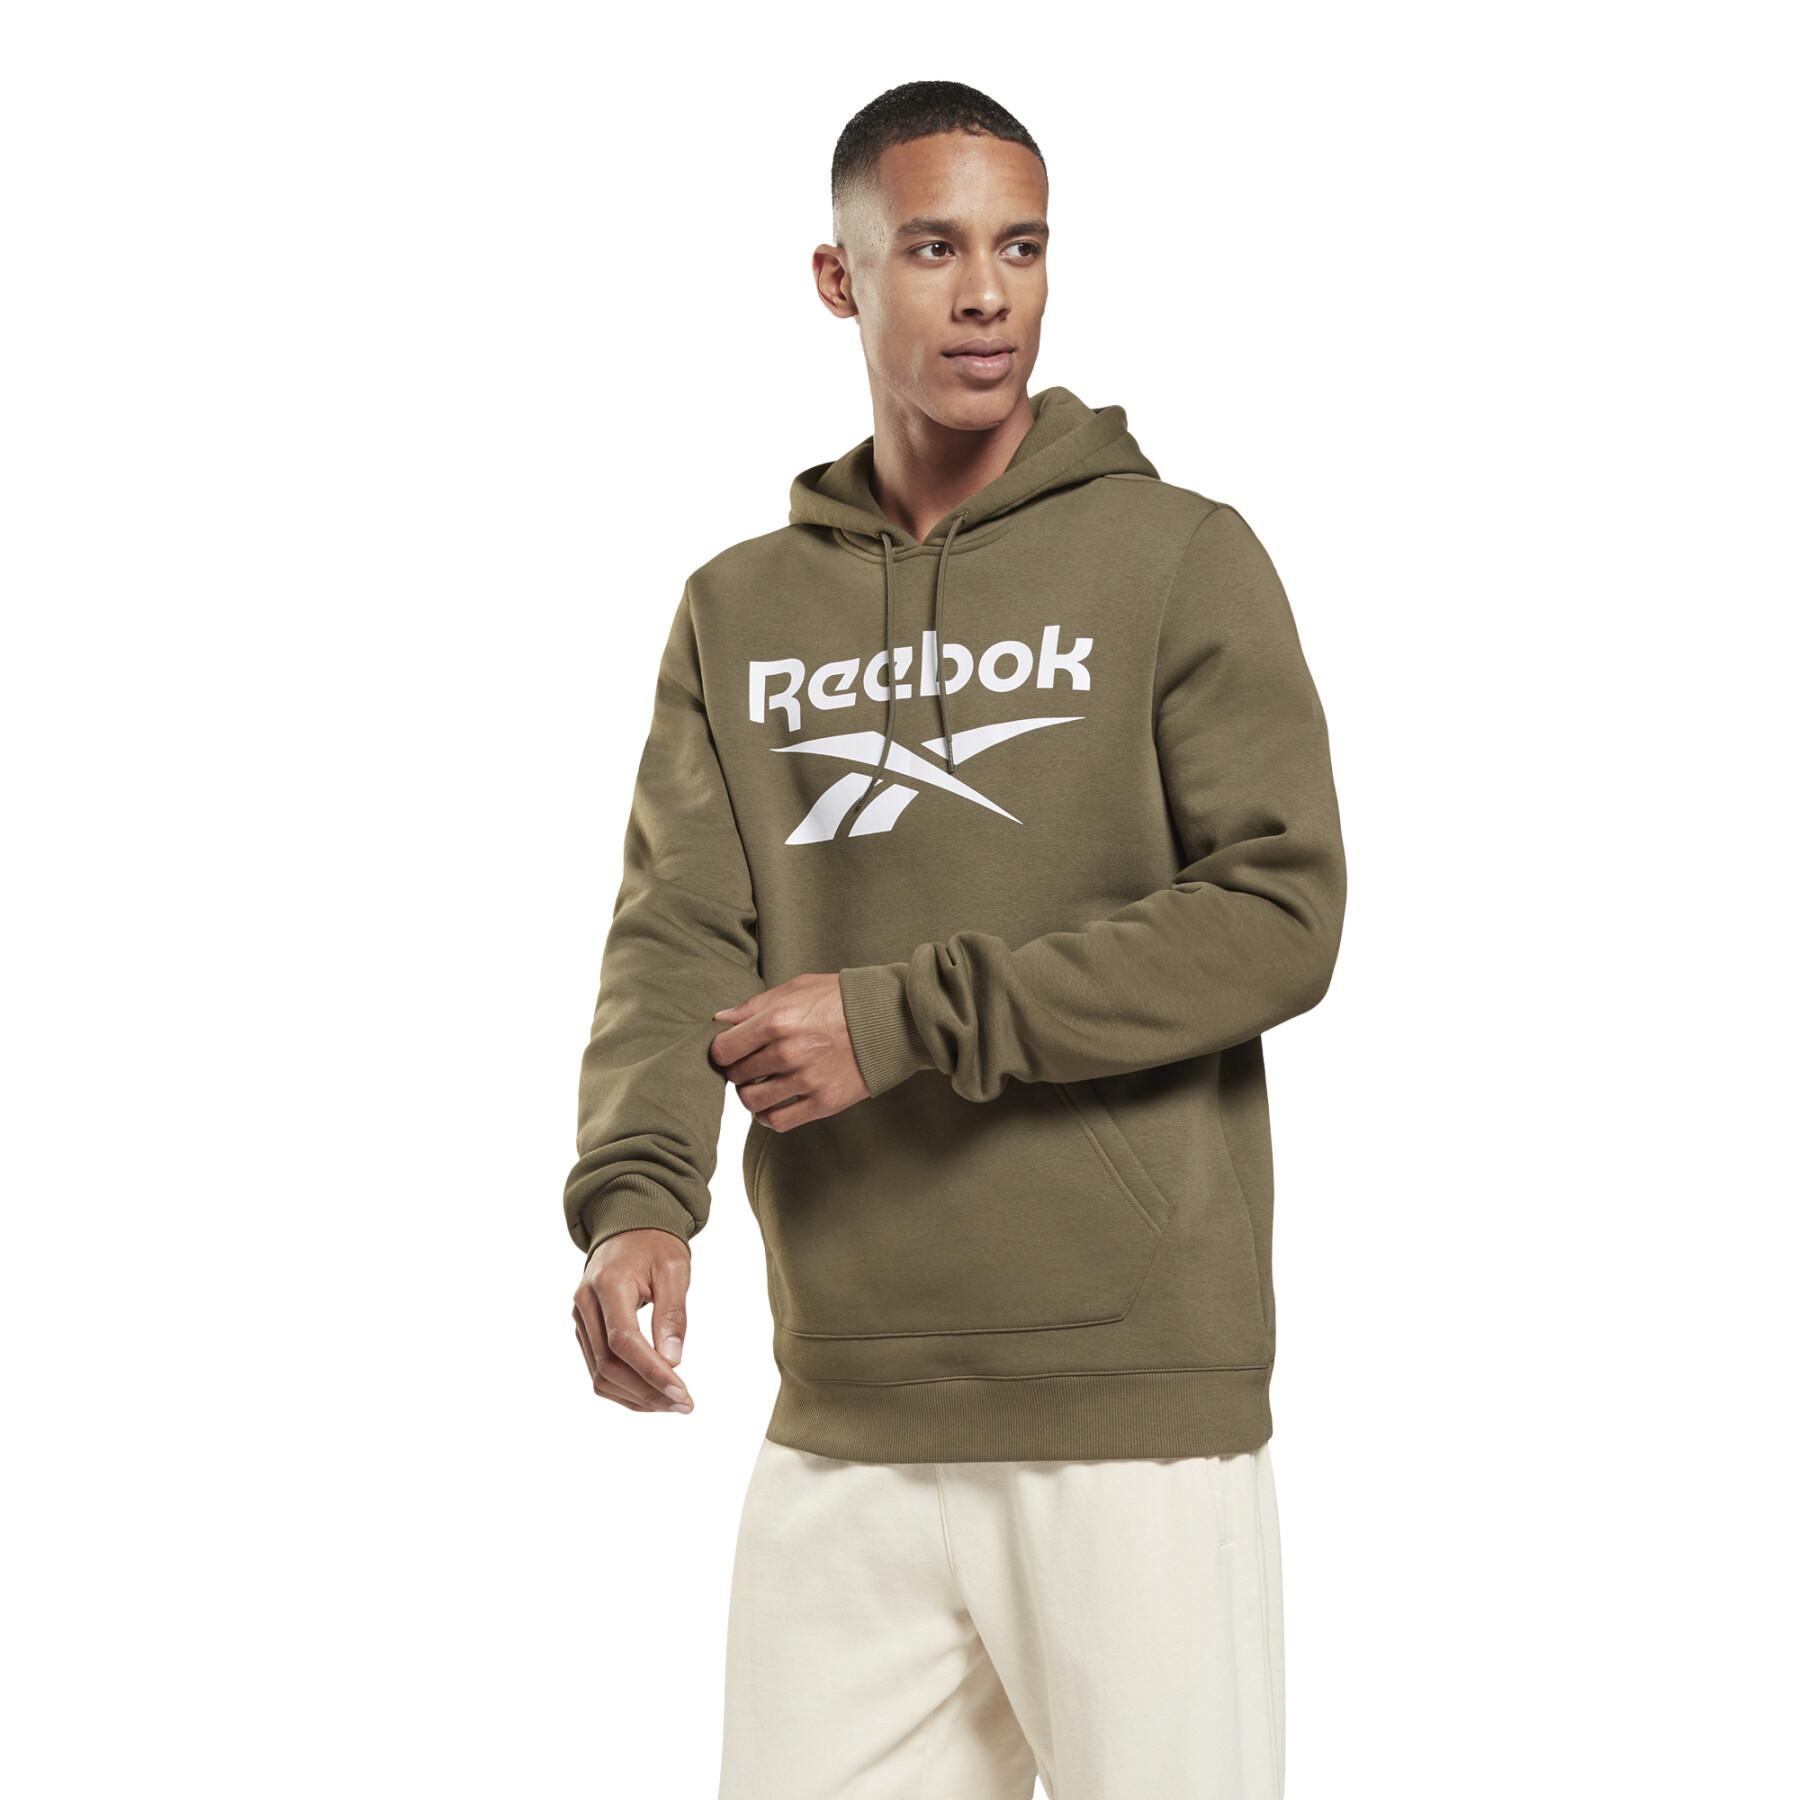 Fleece hoodie Reebok Identity